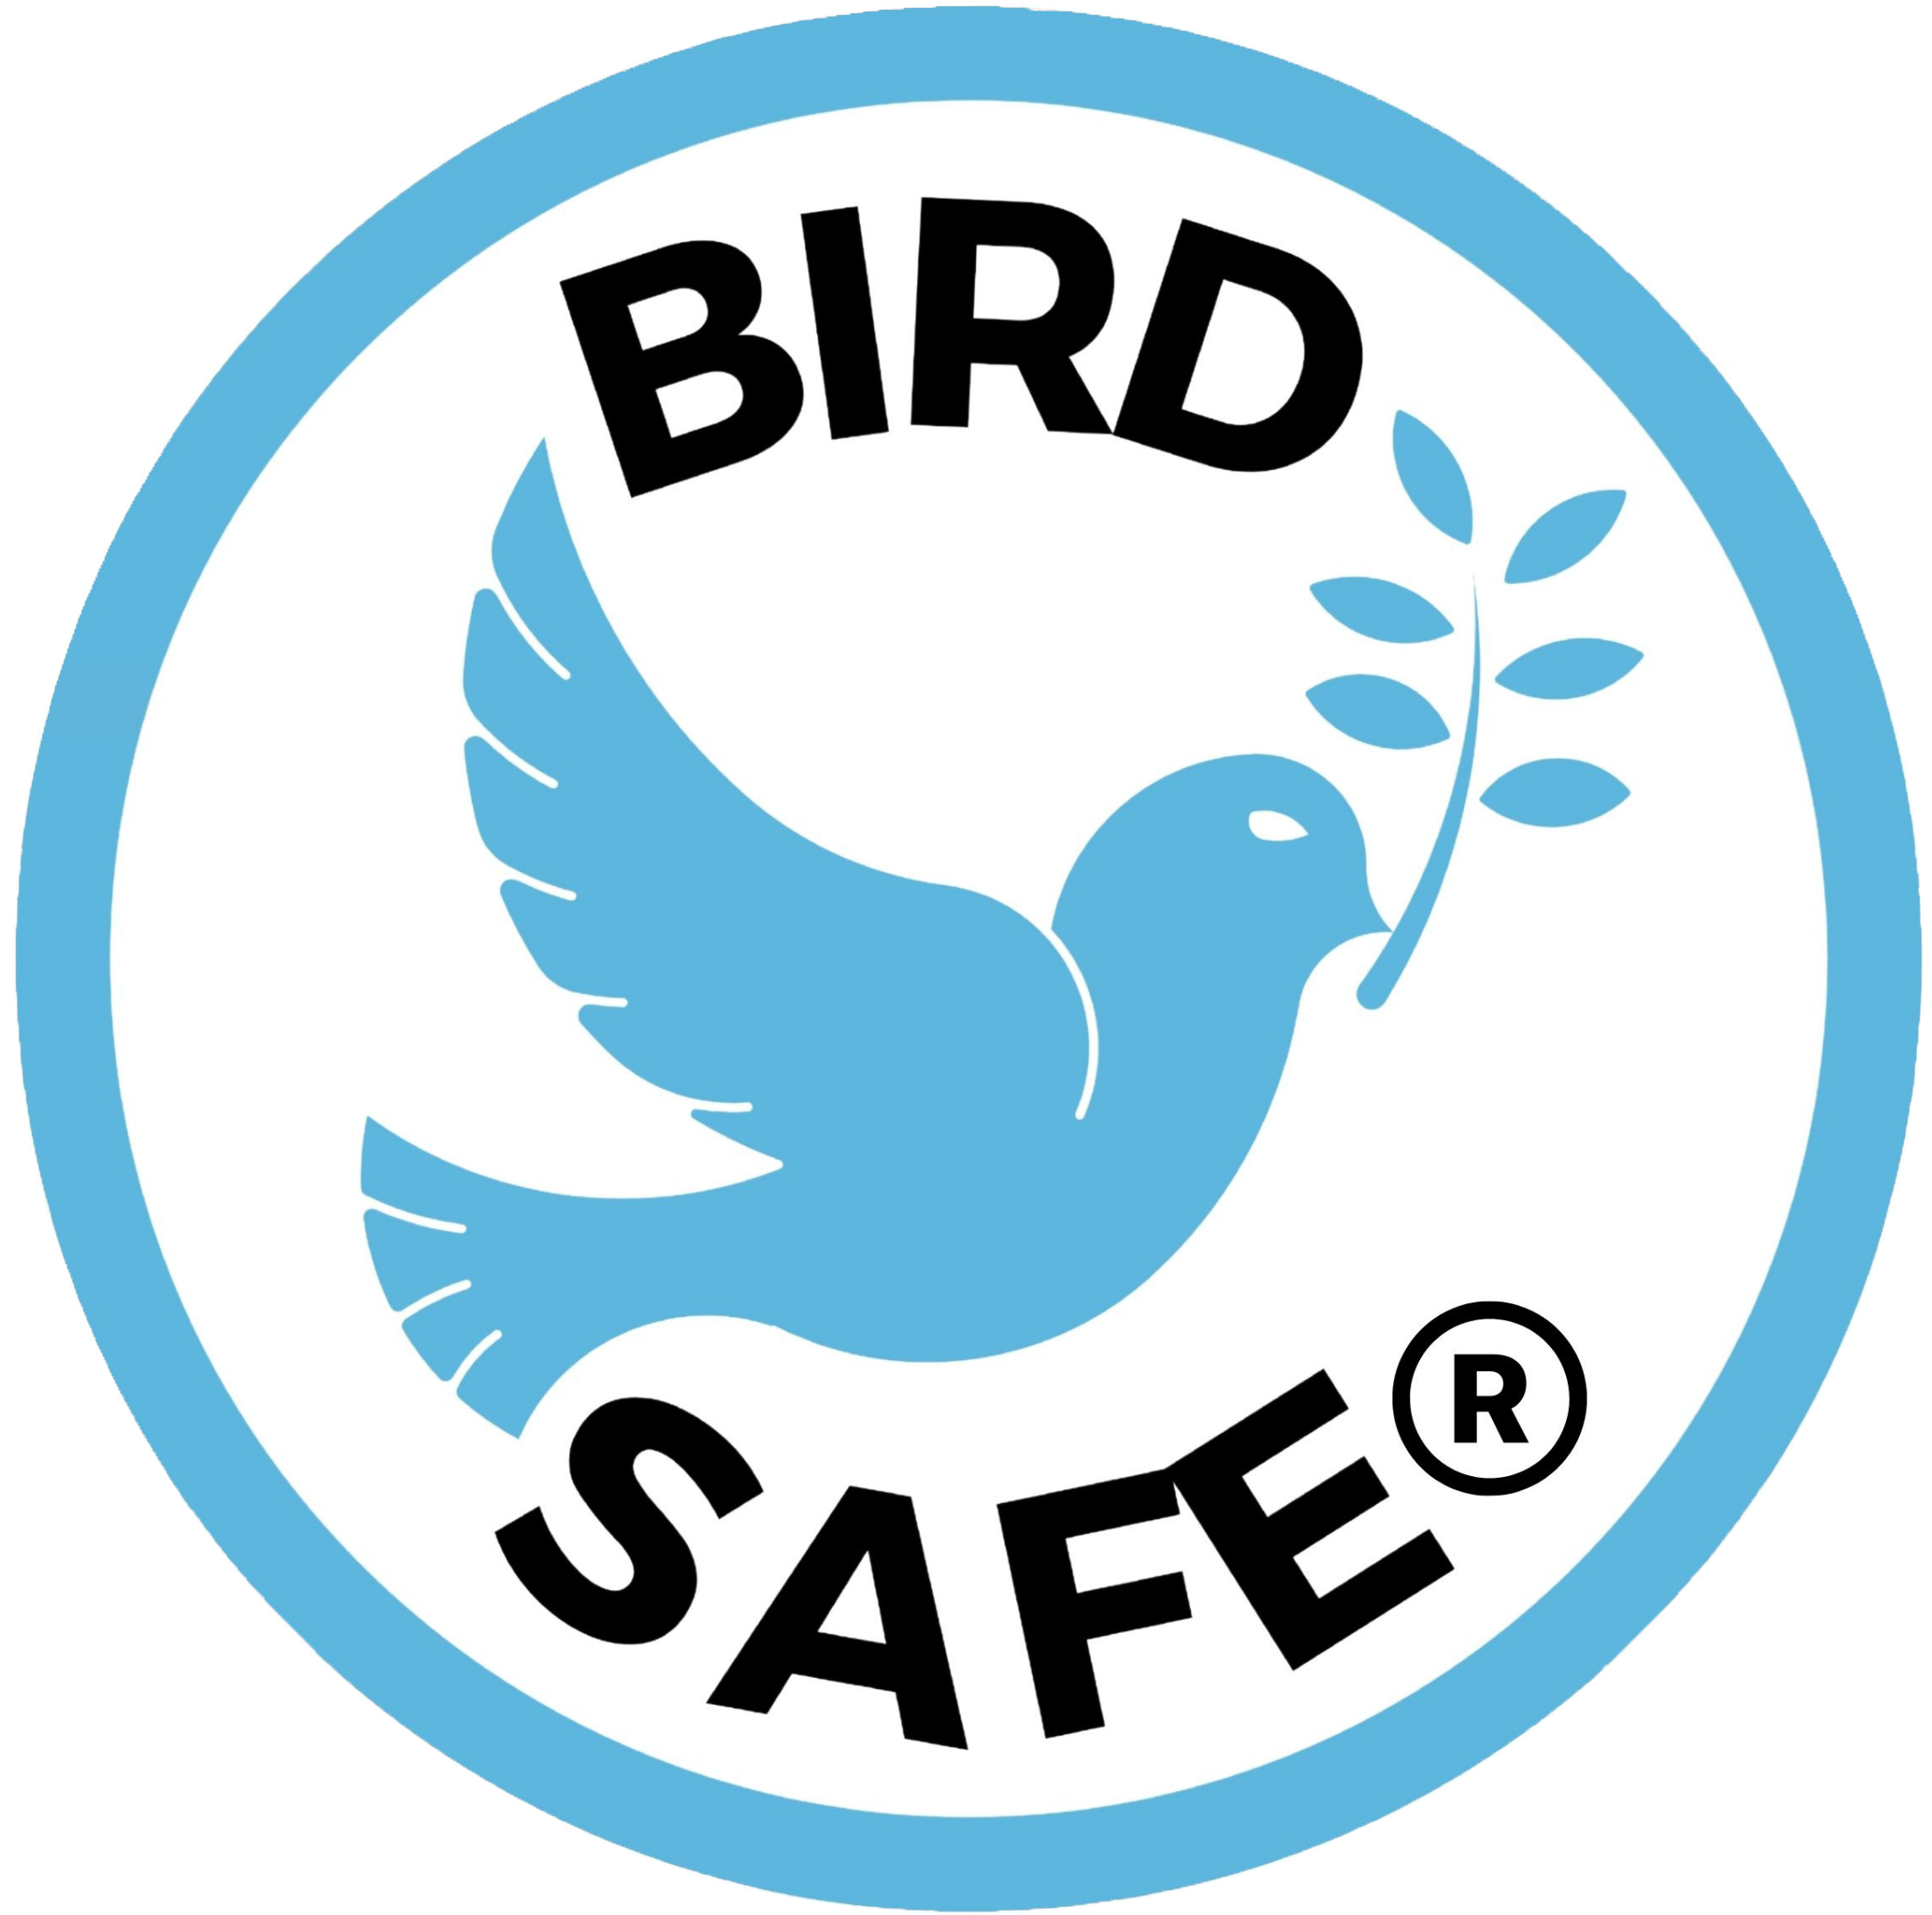 BIRD SAFE